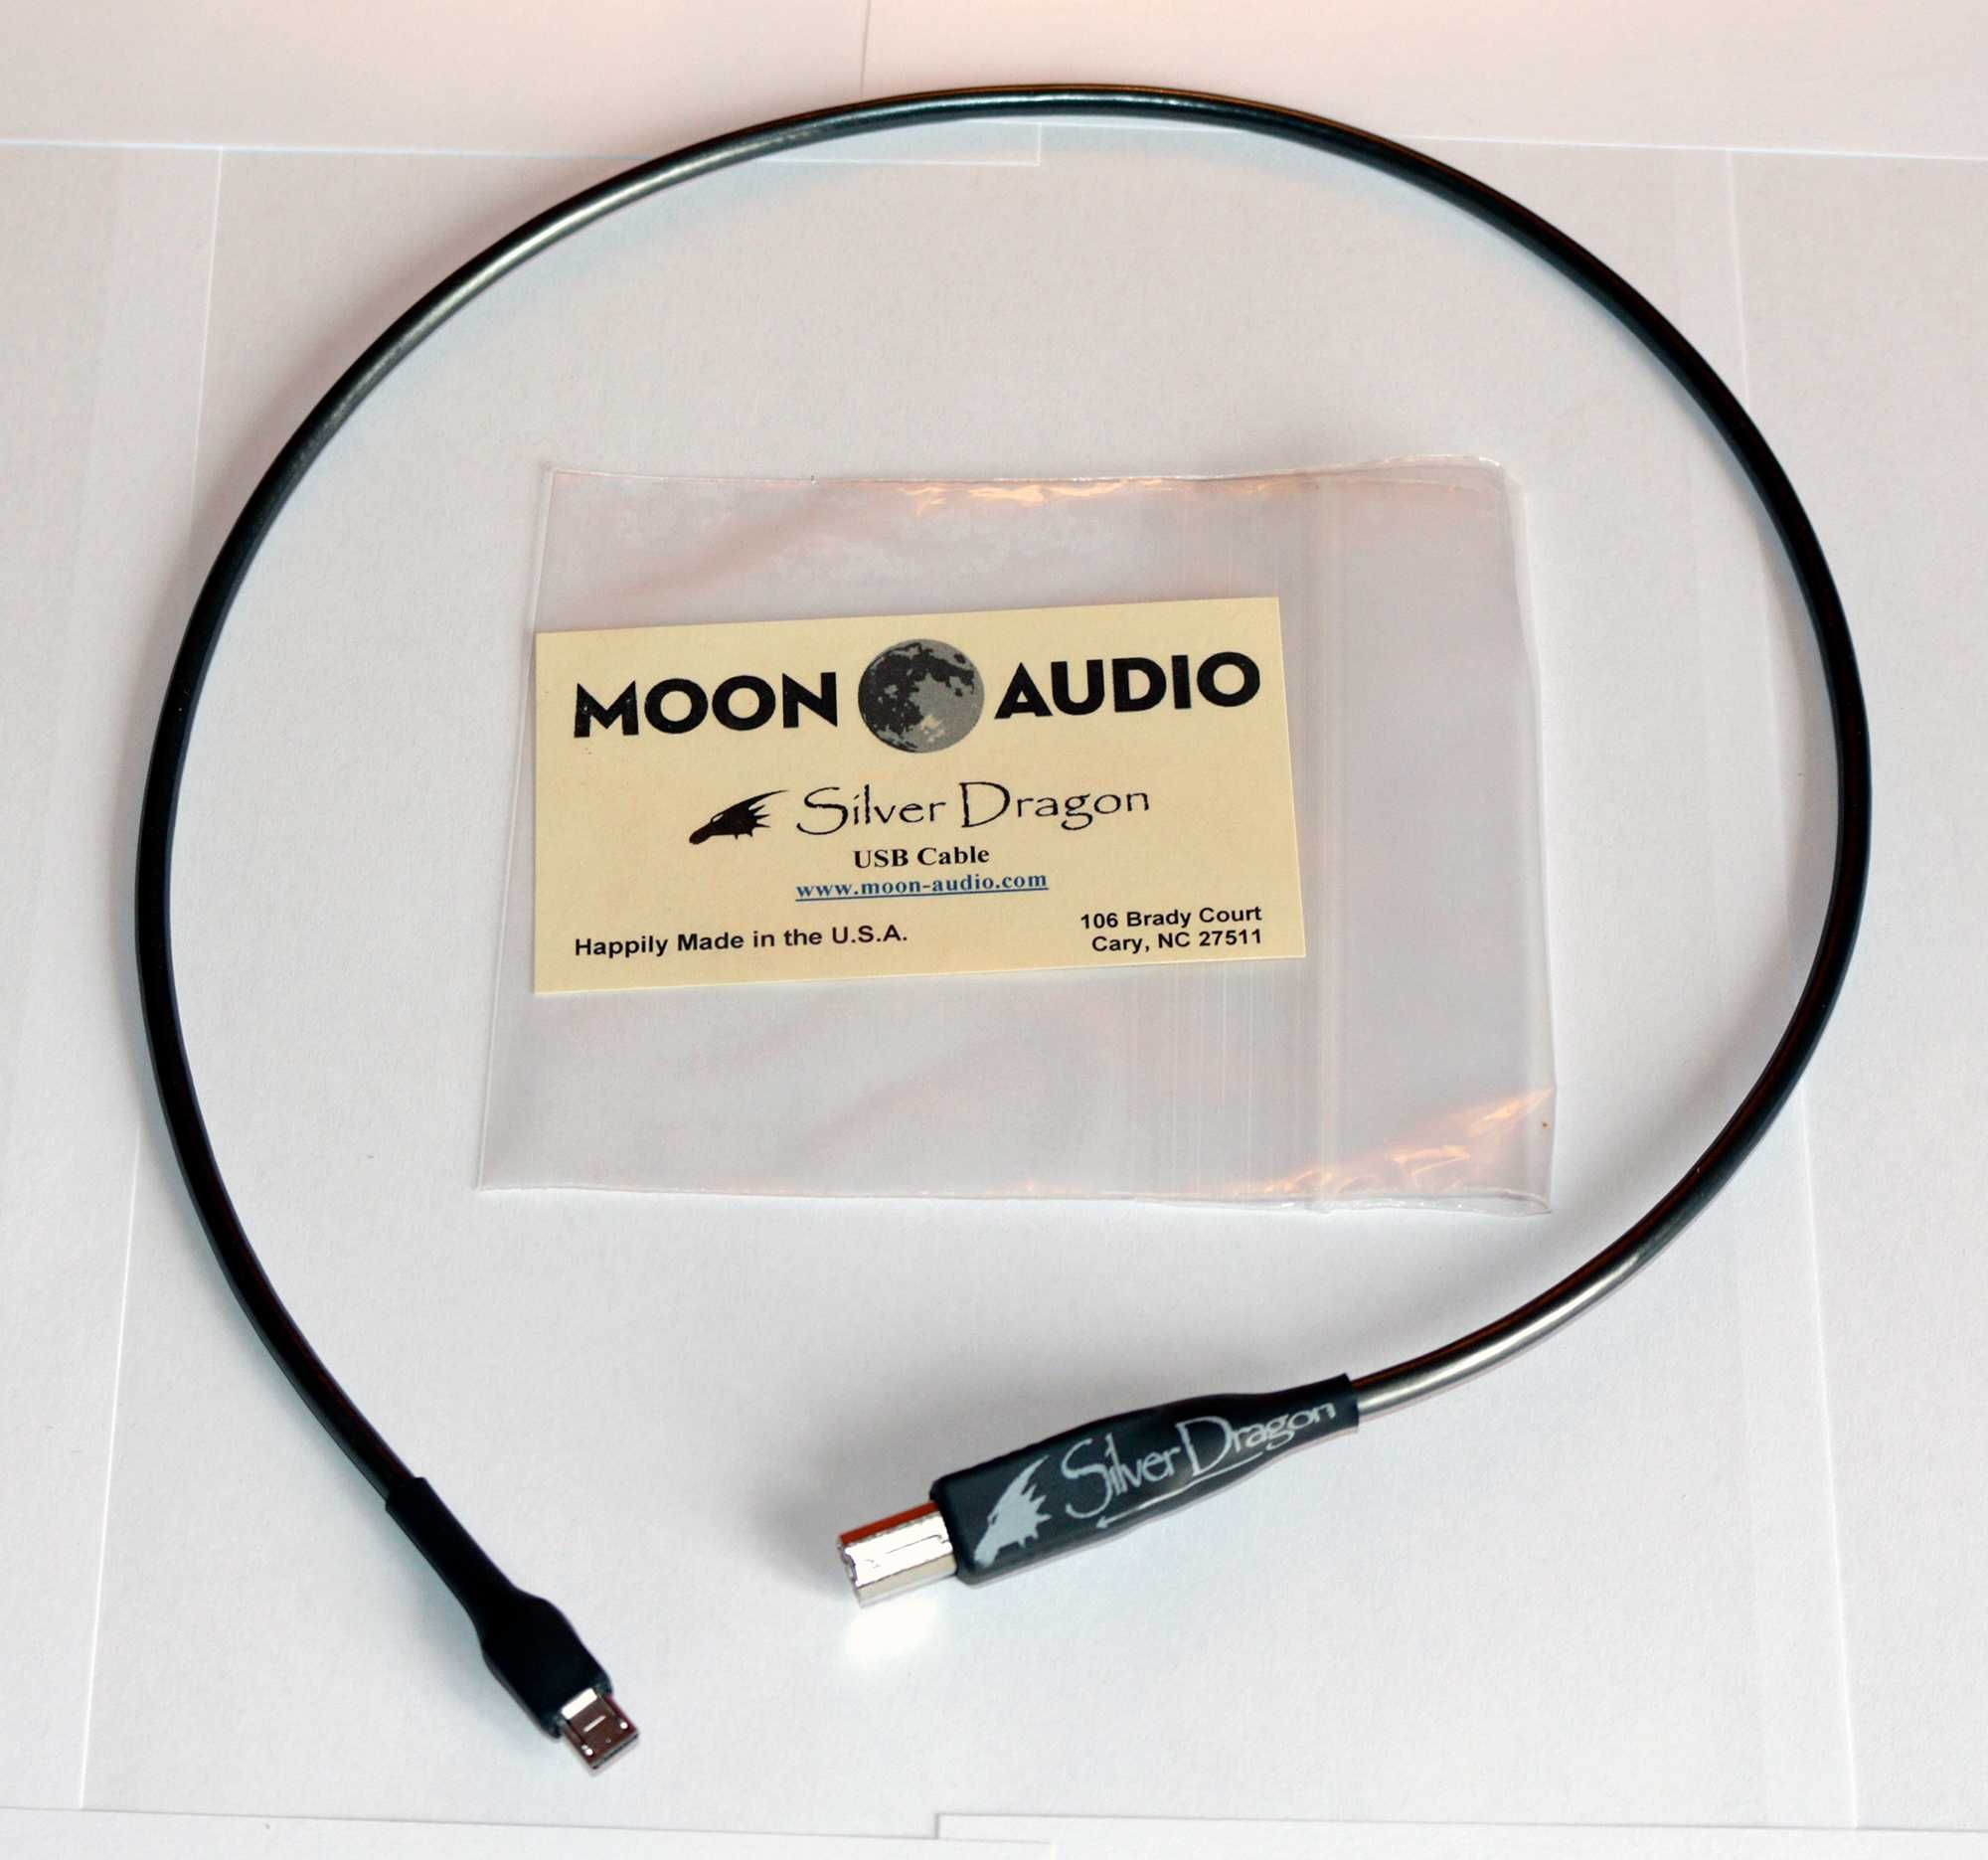 Cabo USB OTG Prata - Silver Dragon Moon Audio // Astell & Kern